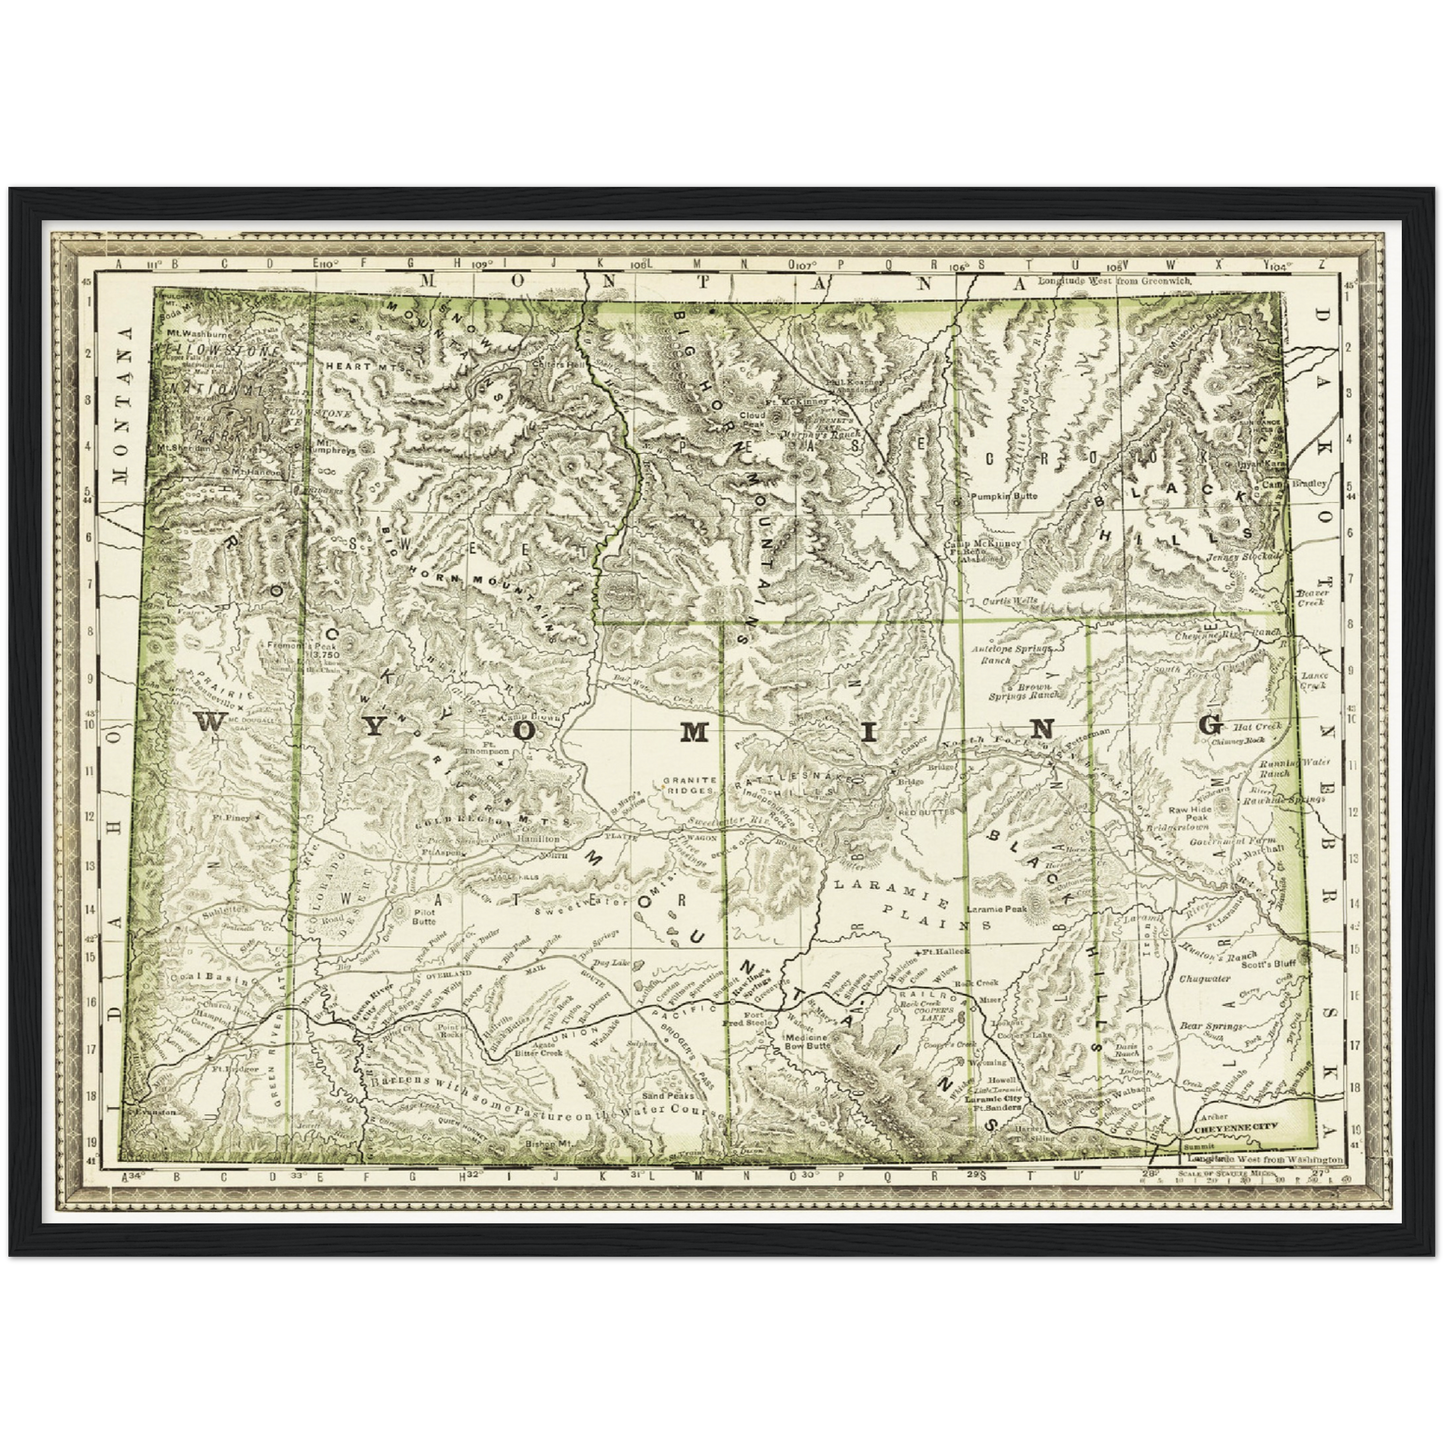 Historische Landkarte Wyoming um 1882